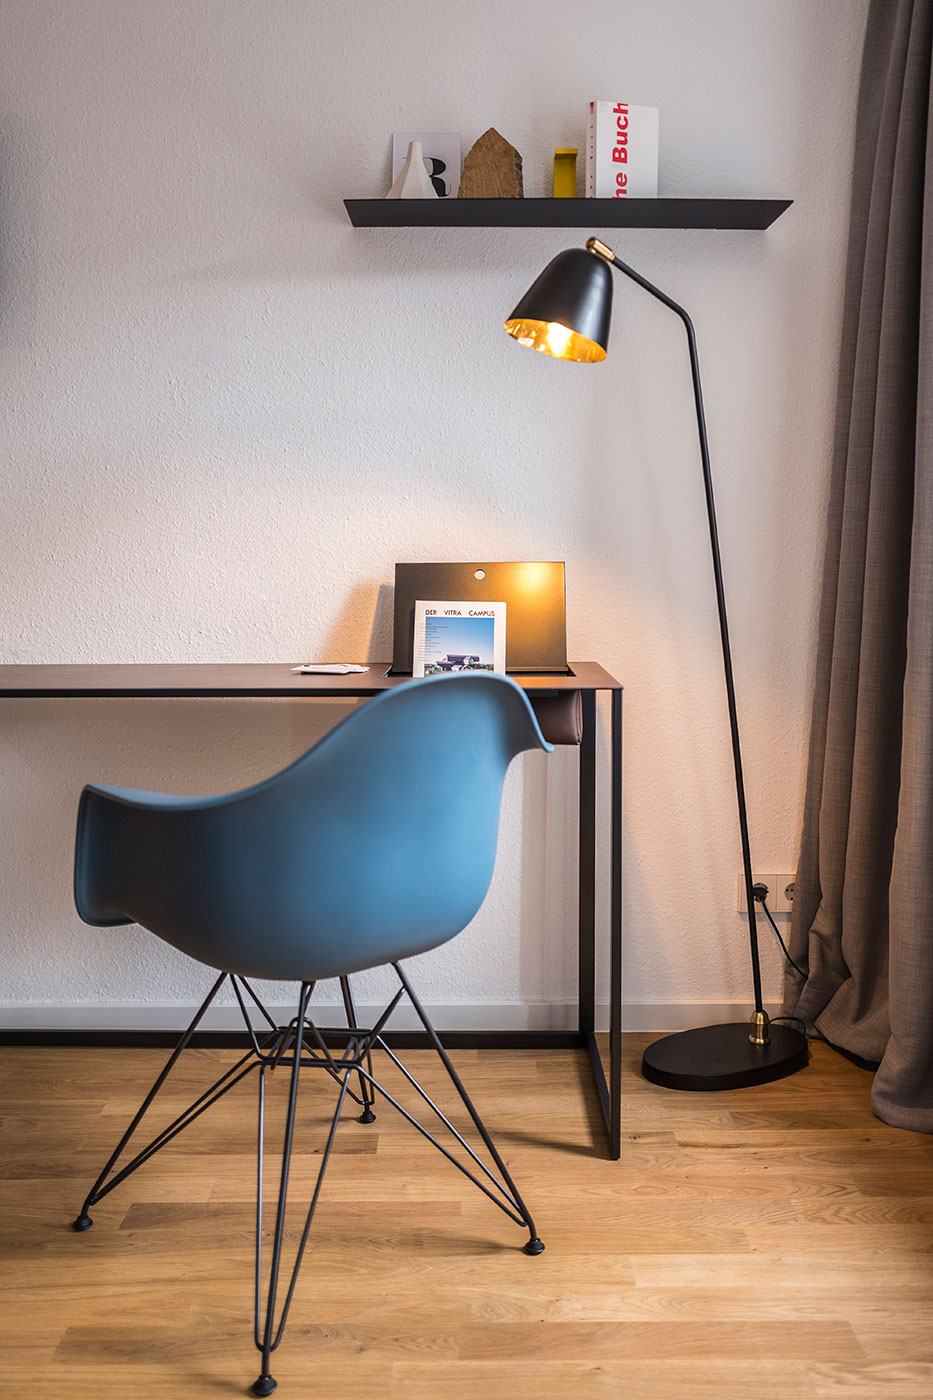 Designer furniture shapes rooms | Room Concept by Stilobjekt